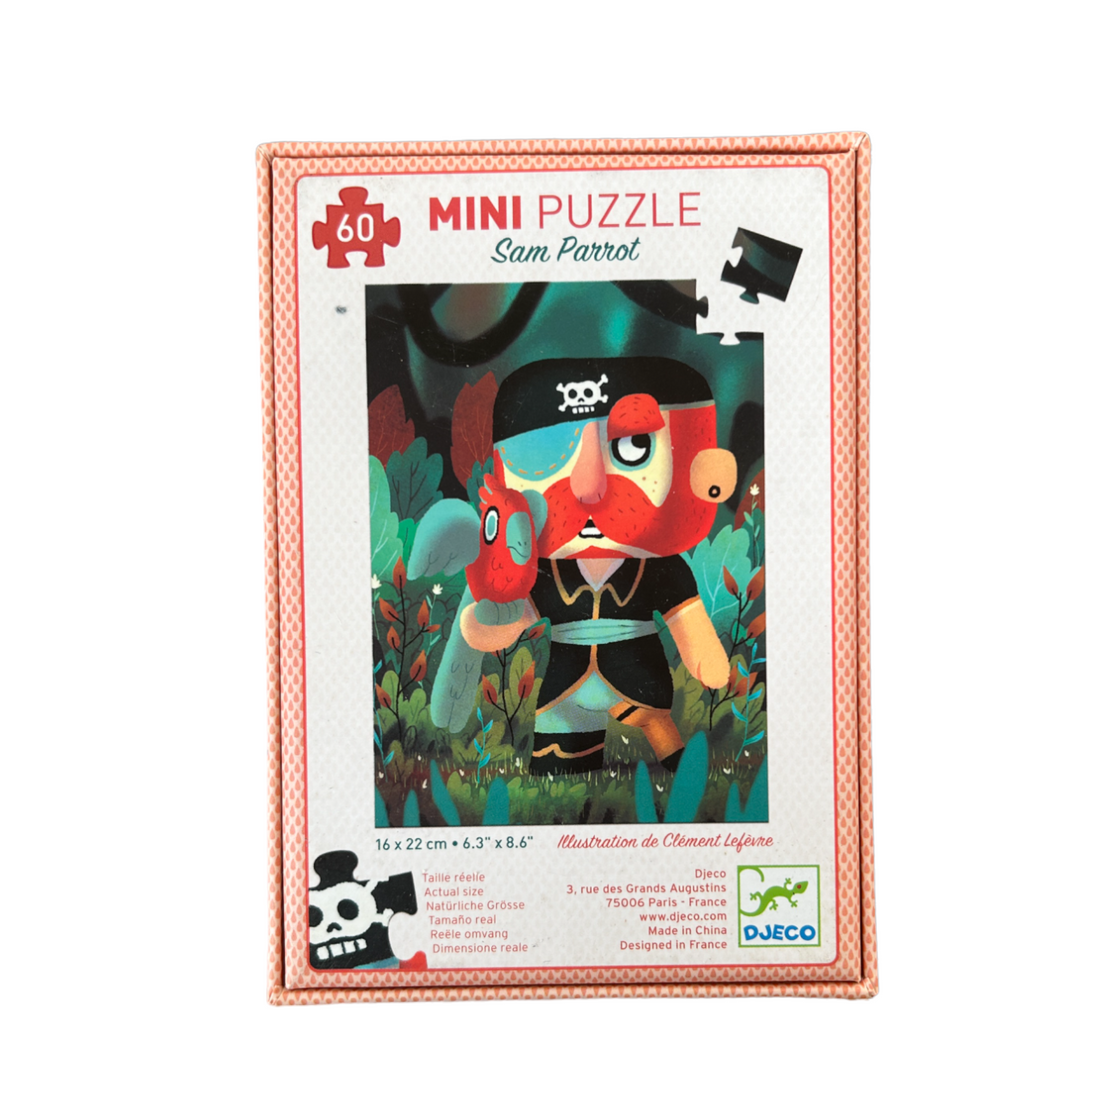 Mini puzzle - Sam Parrot